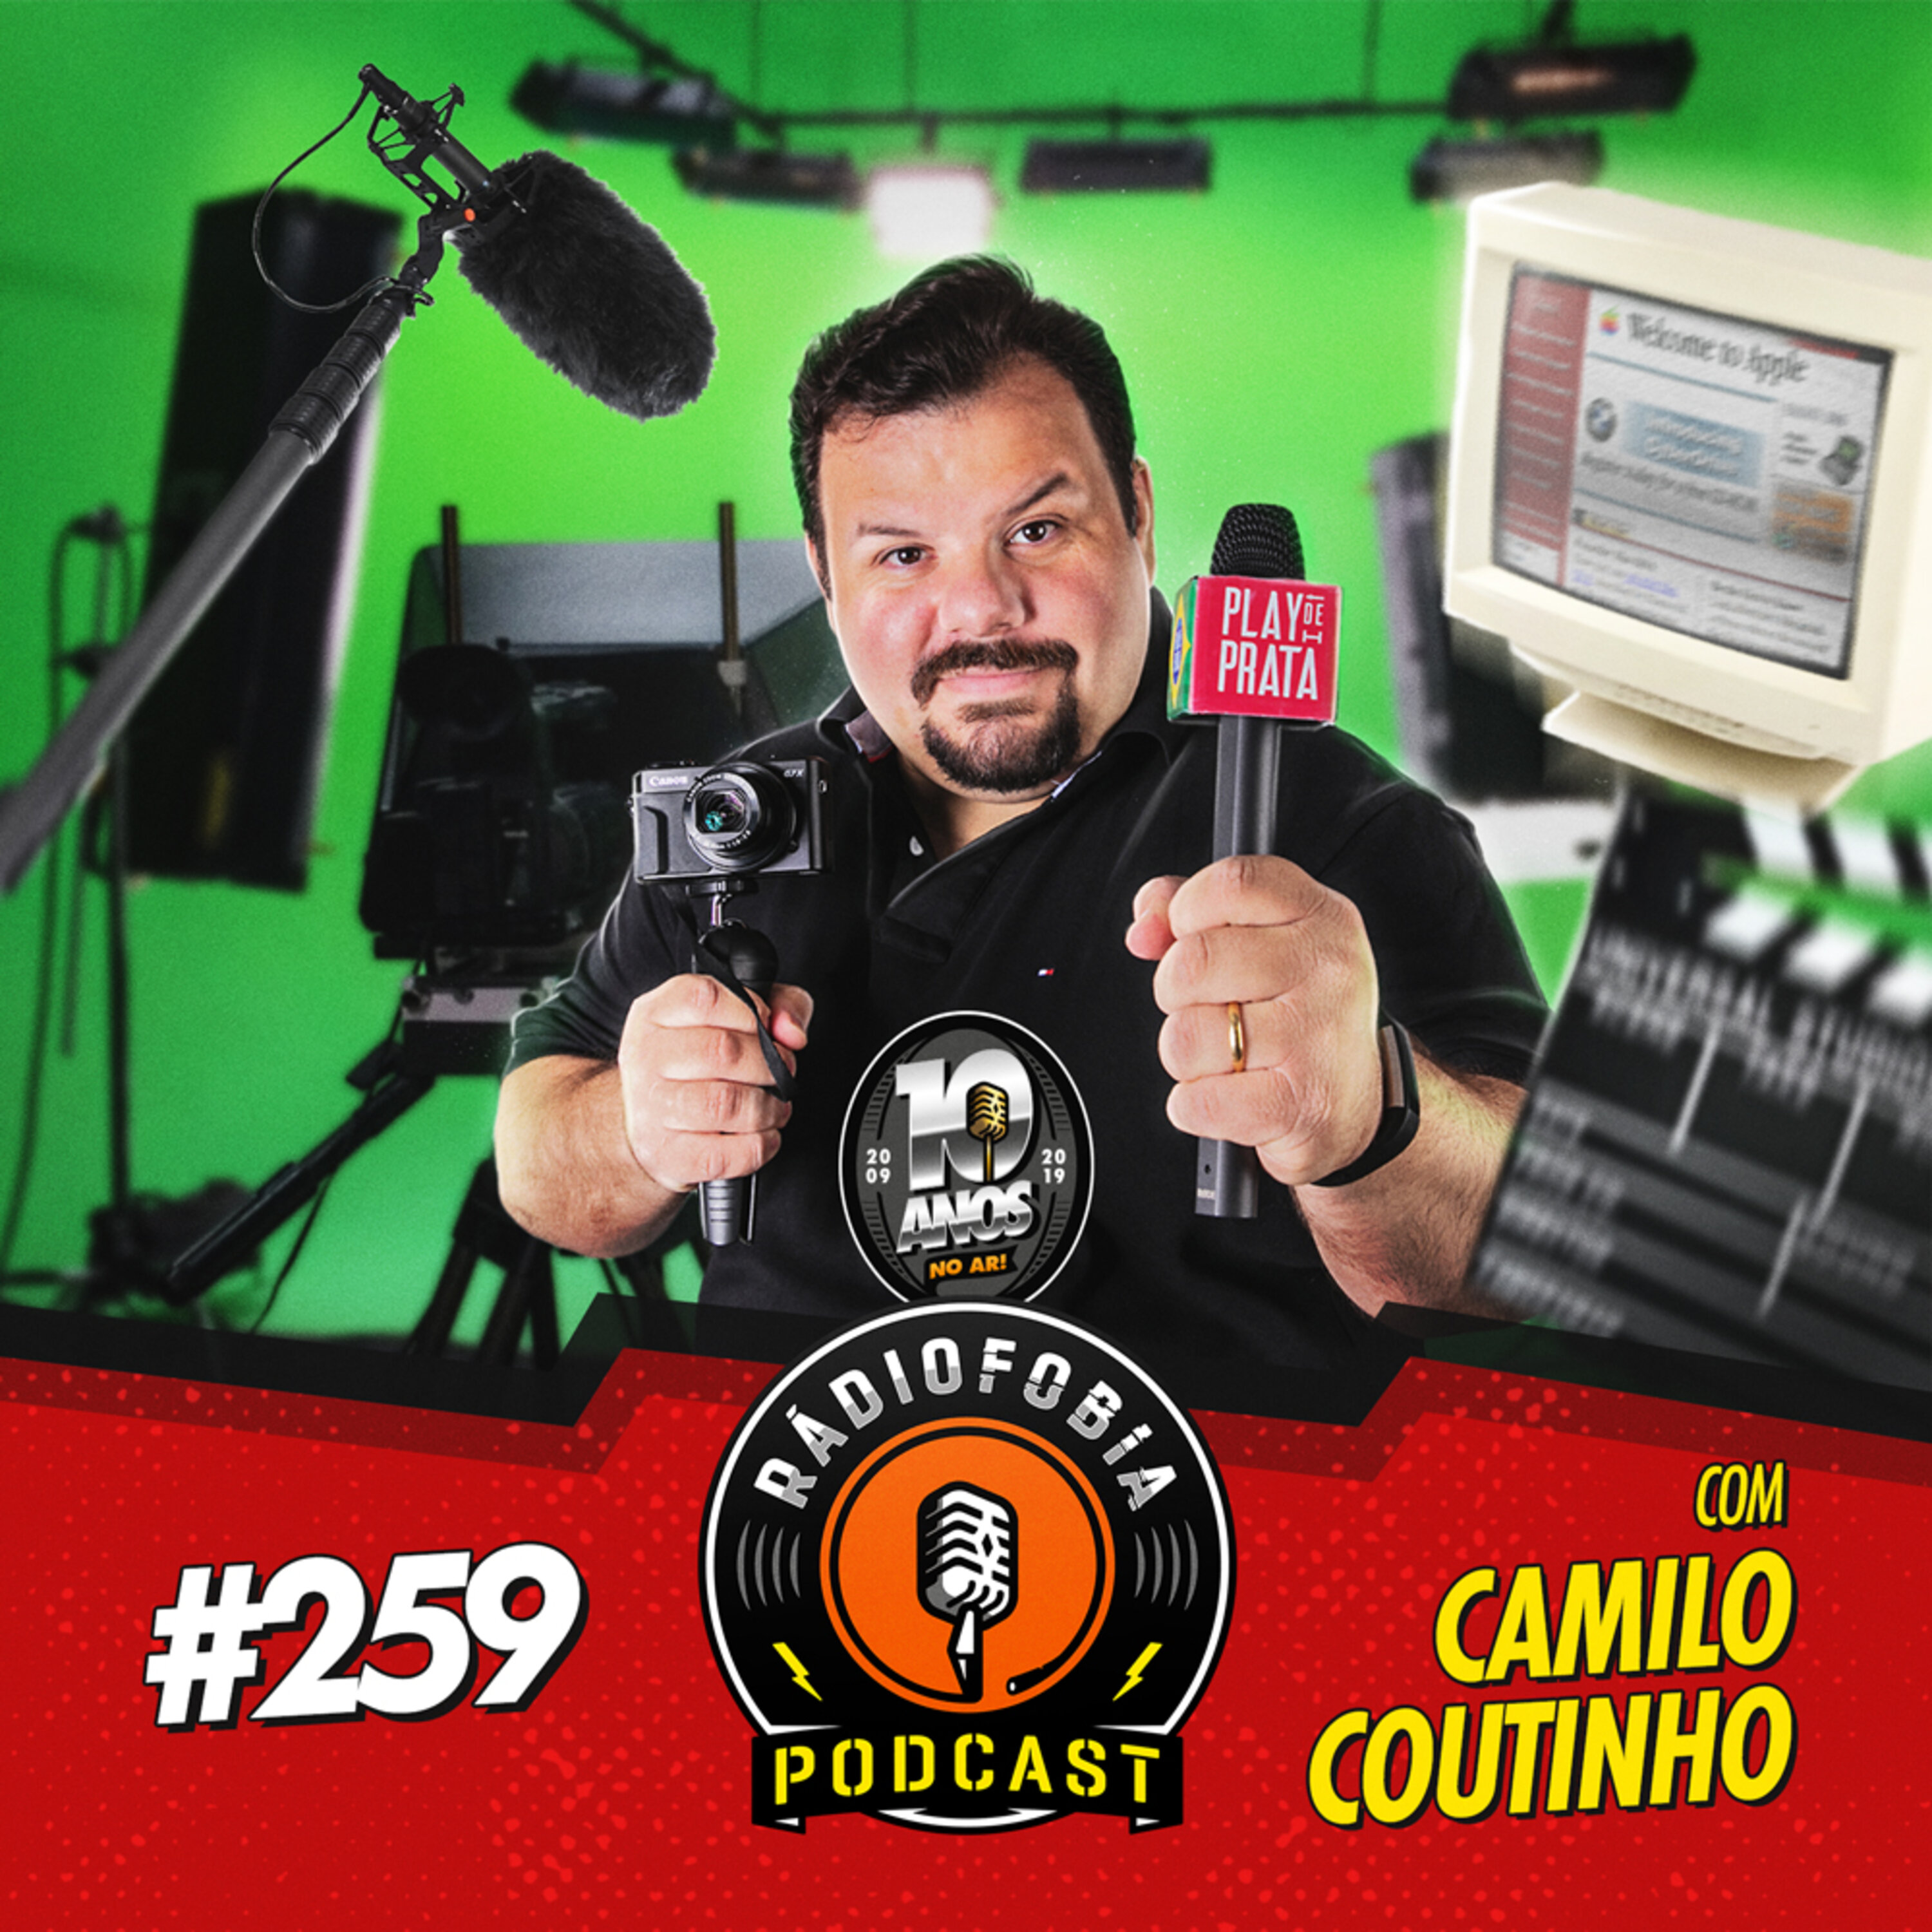 RADIOFOBIA 259 – com Camilo Coutinho